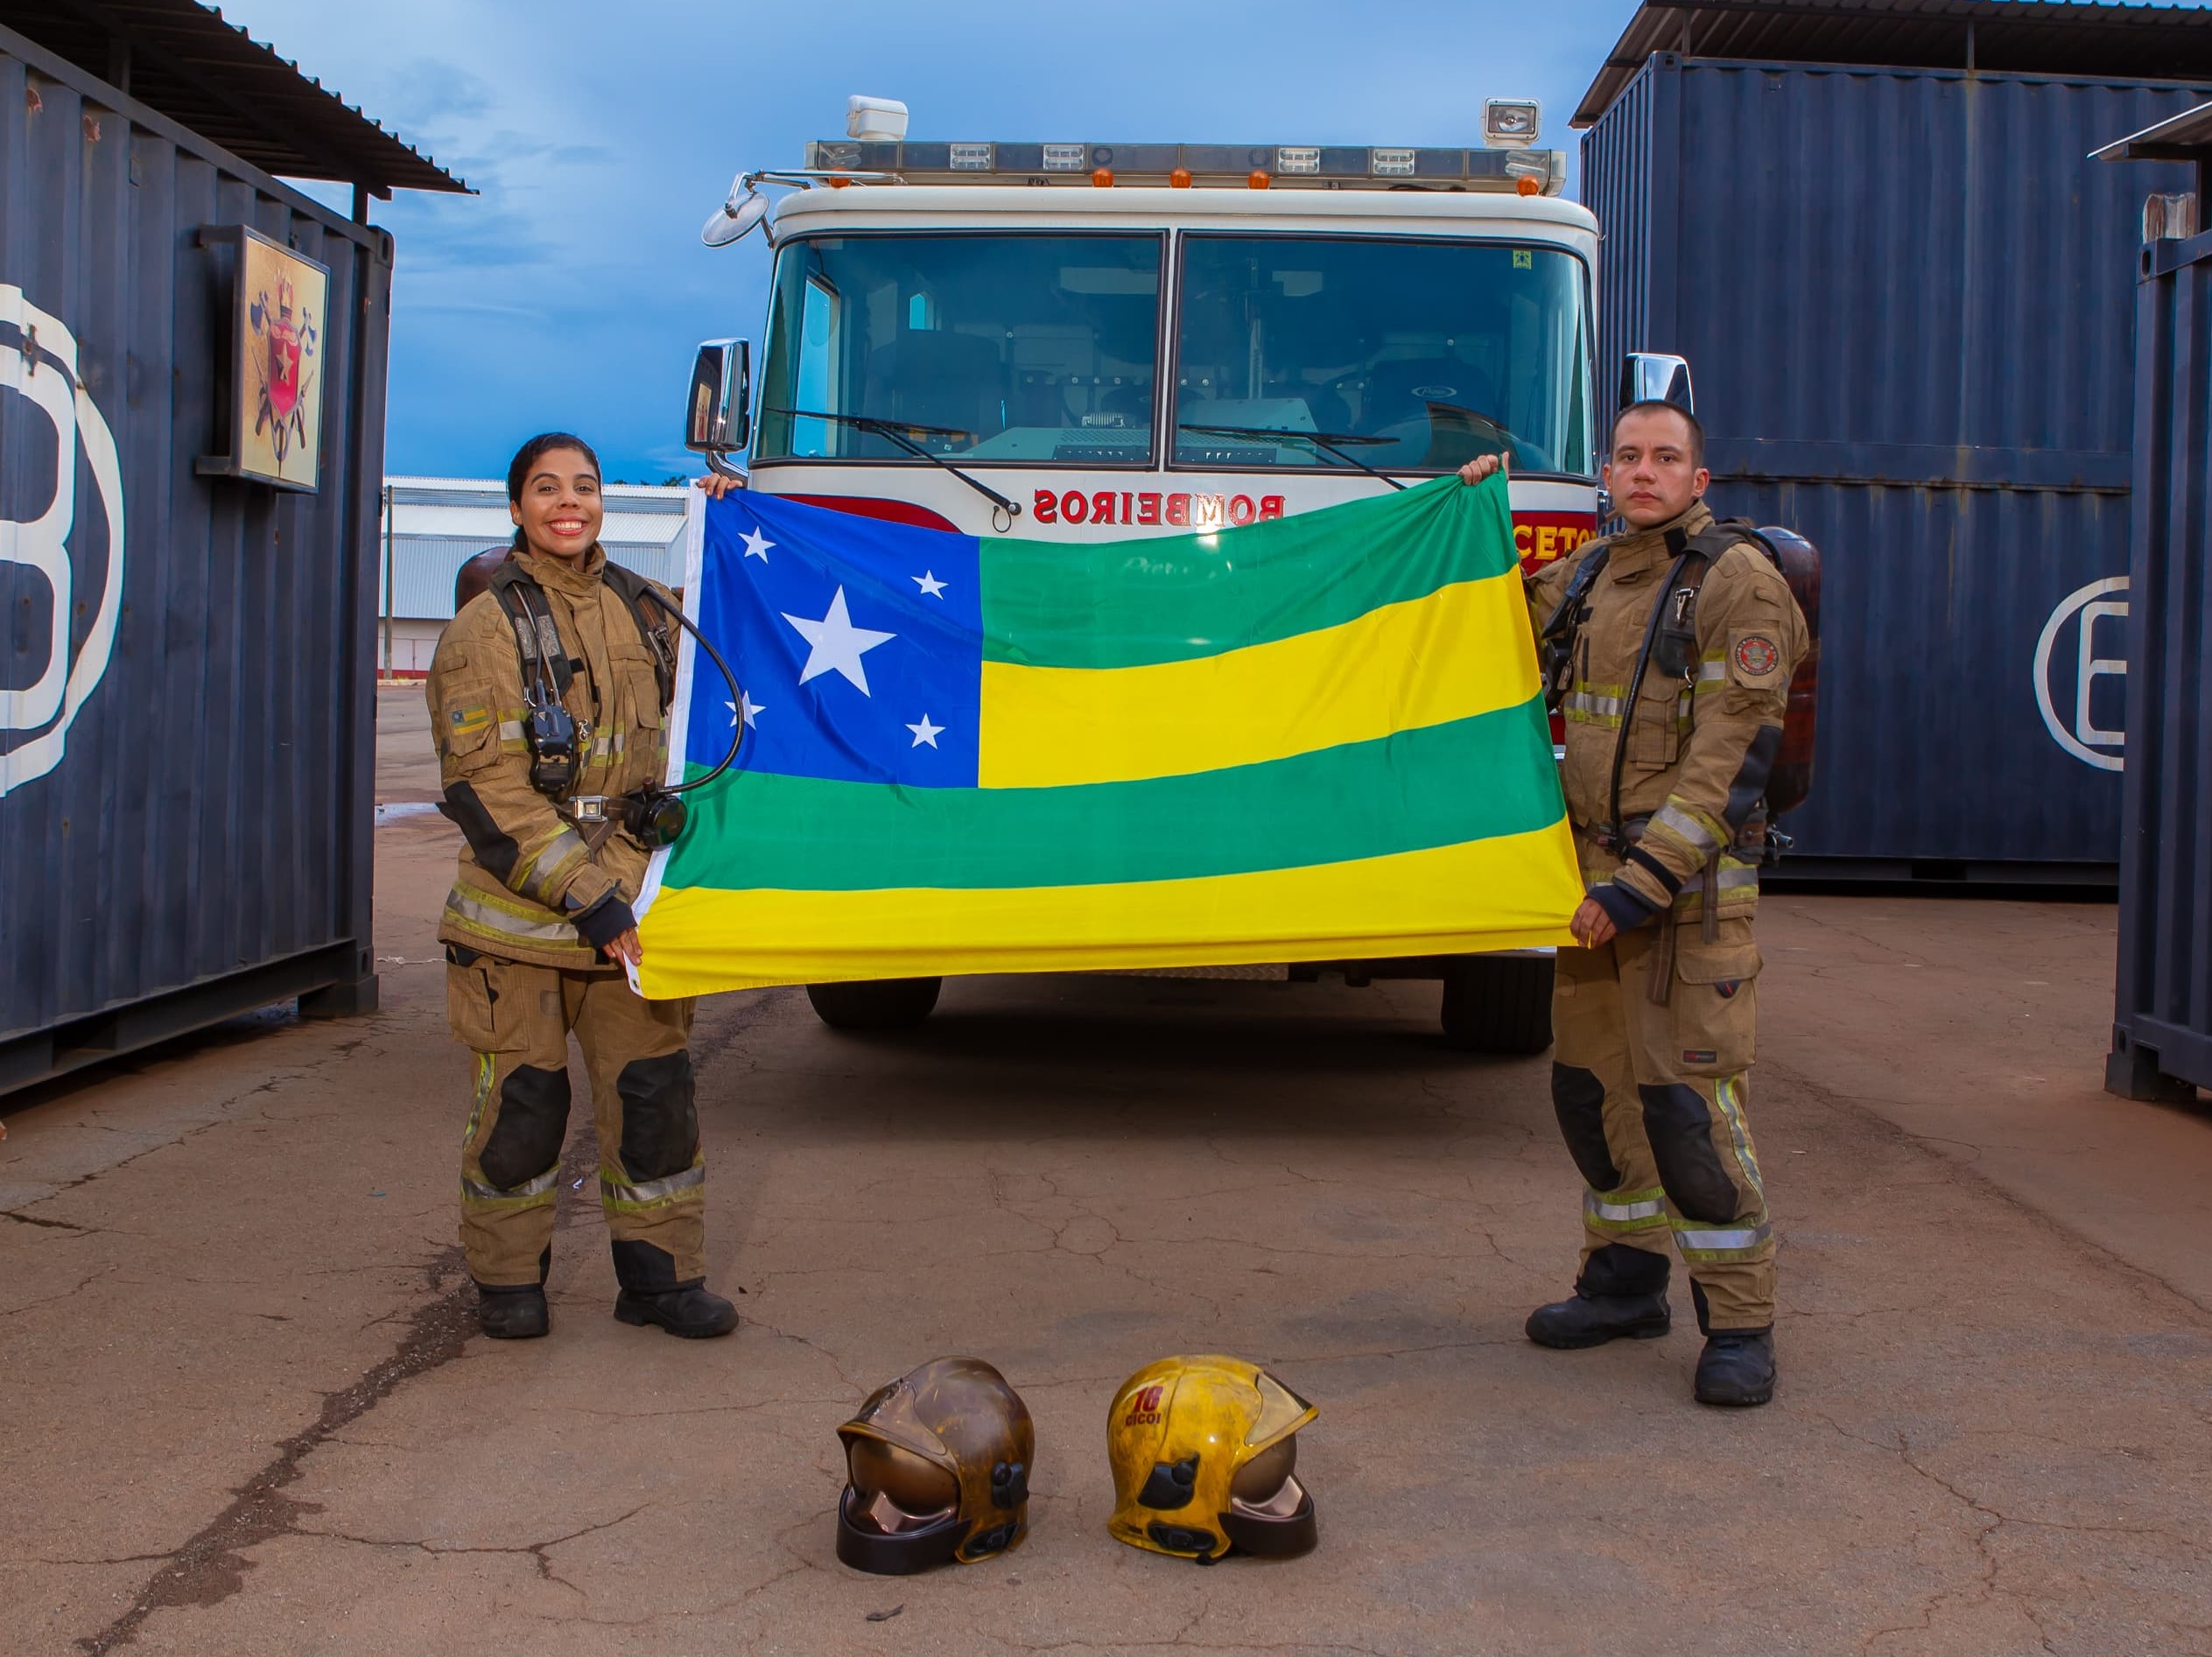 Bombeiros de Sergipe concluem Curso de Instrutor de Combate a Incêndio no Distrito Federal